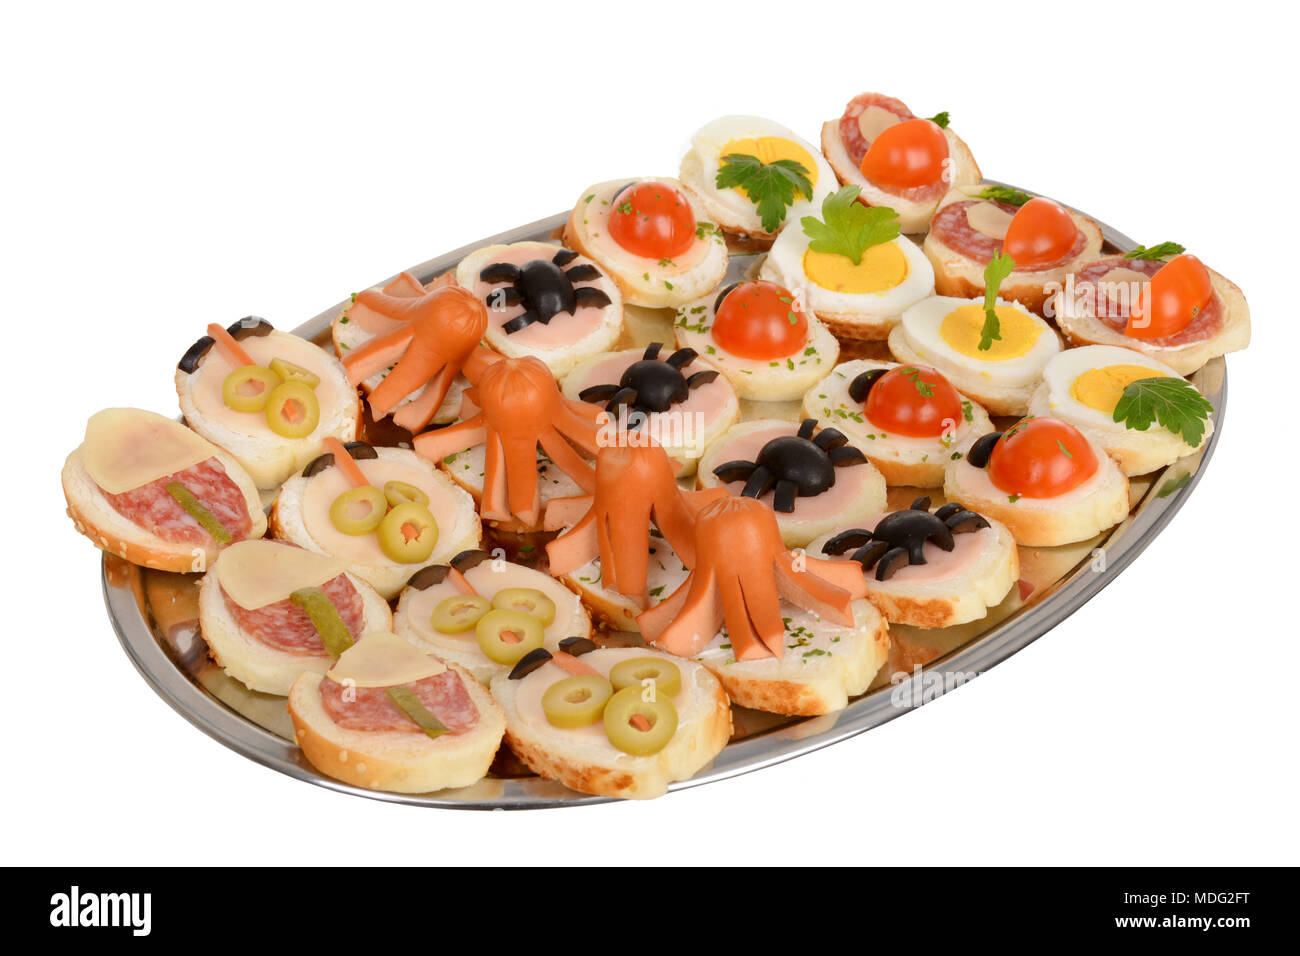 Table de banquet Restauration magnifiquement décorée avec des hamburgers et des profiteroles. Variété de délicieux en-cas savoureux sur la plaque Banque D'Images